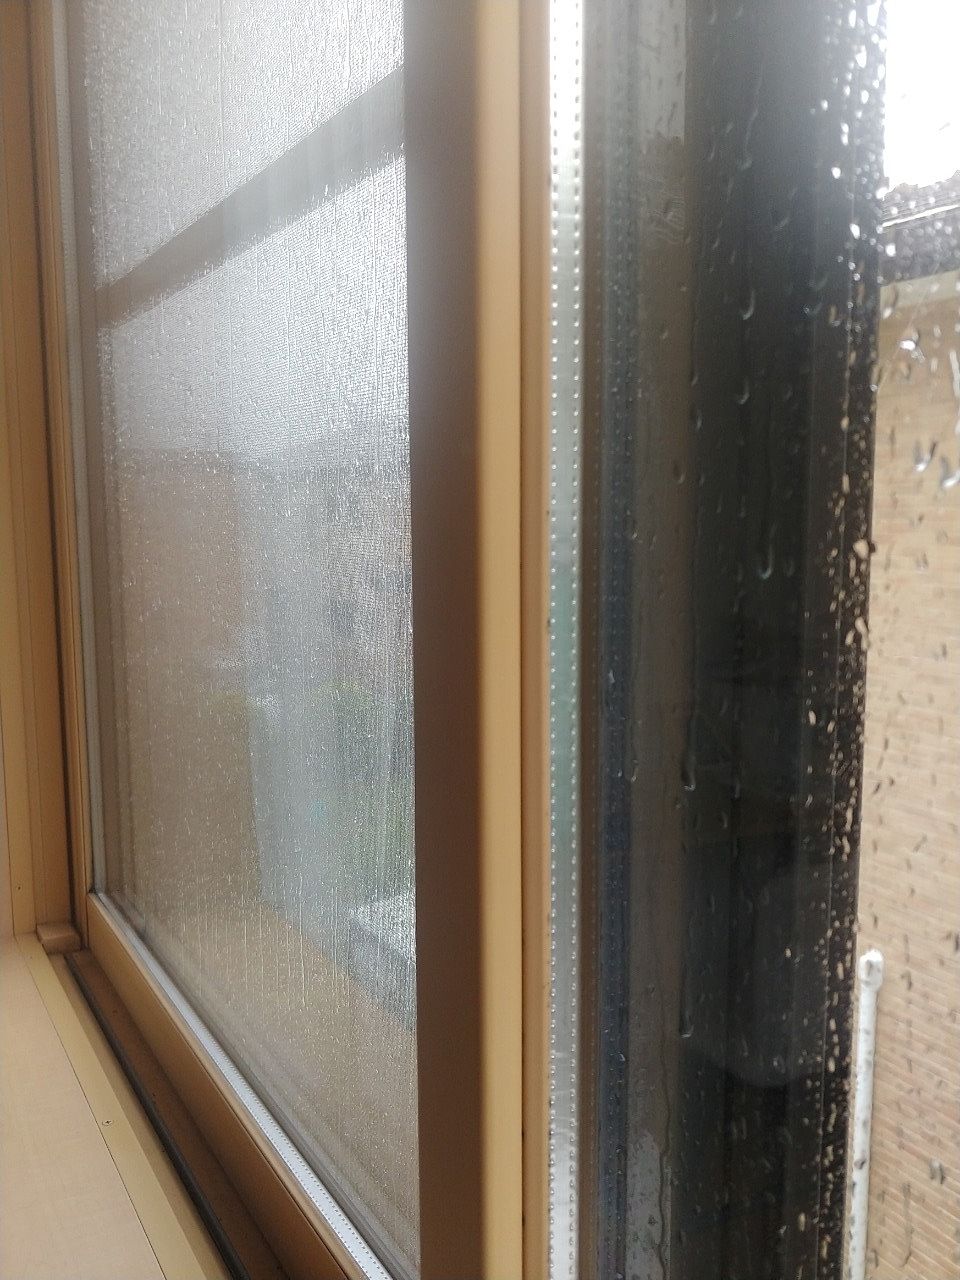 雨がうちつけてびしょ濡れの窓